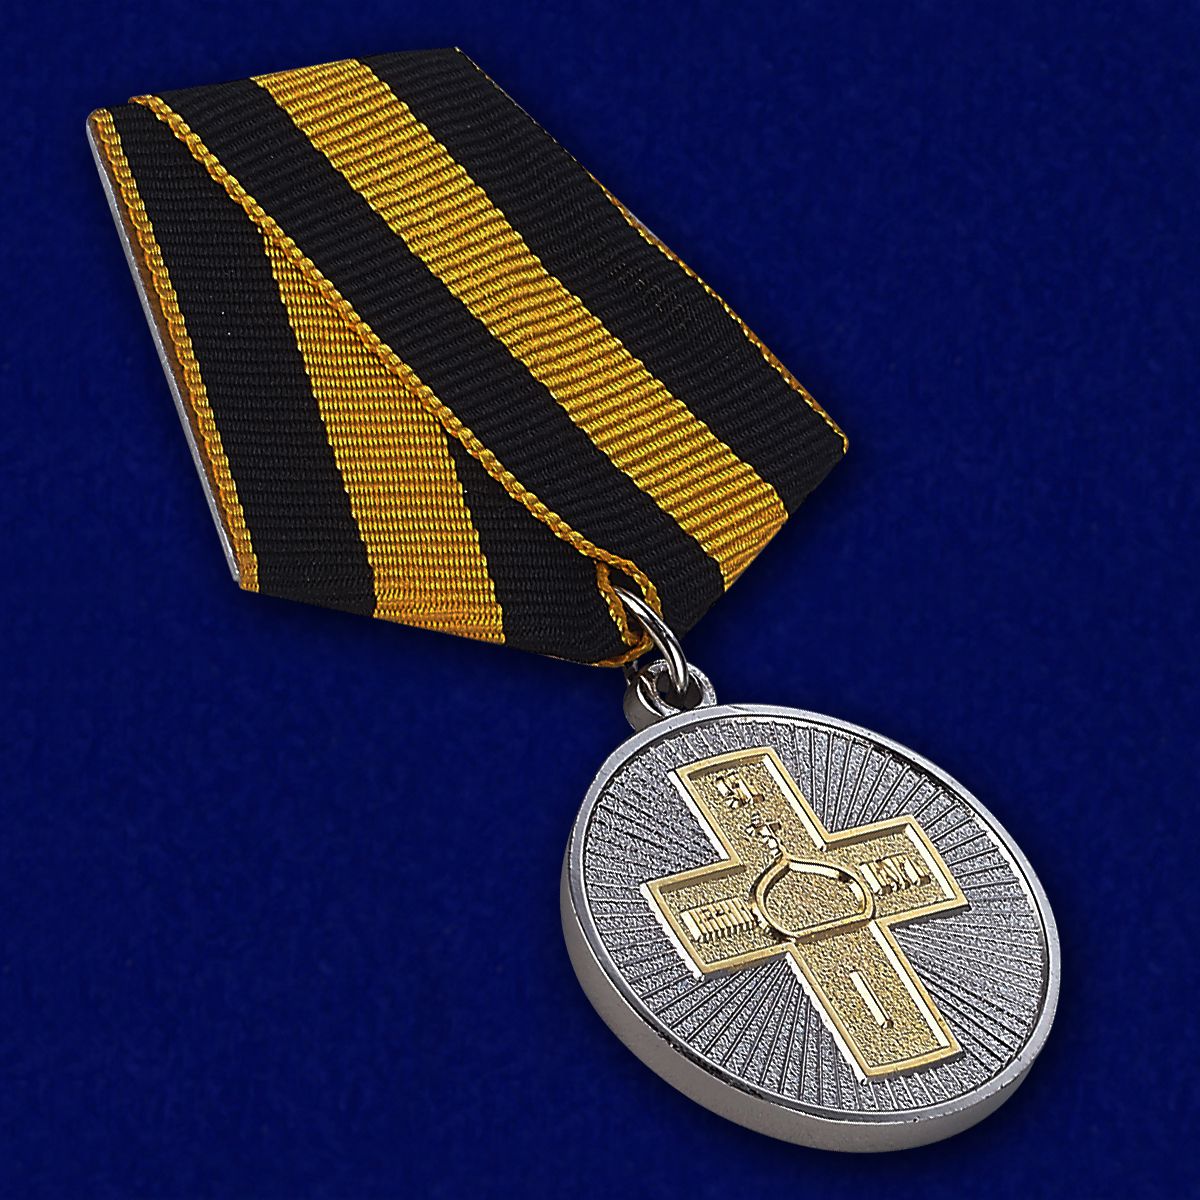 Медаль "Дело Веры" 2 степени 